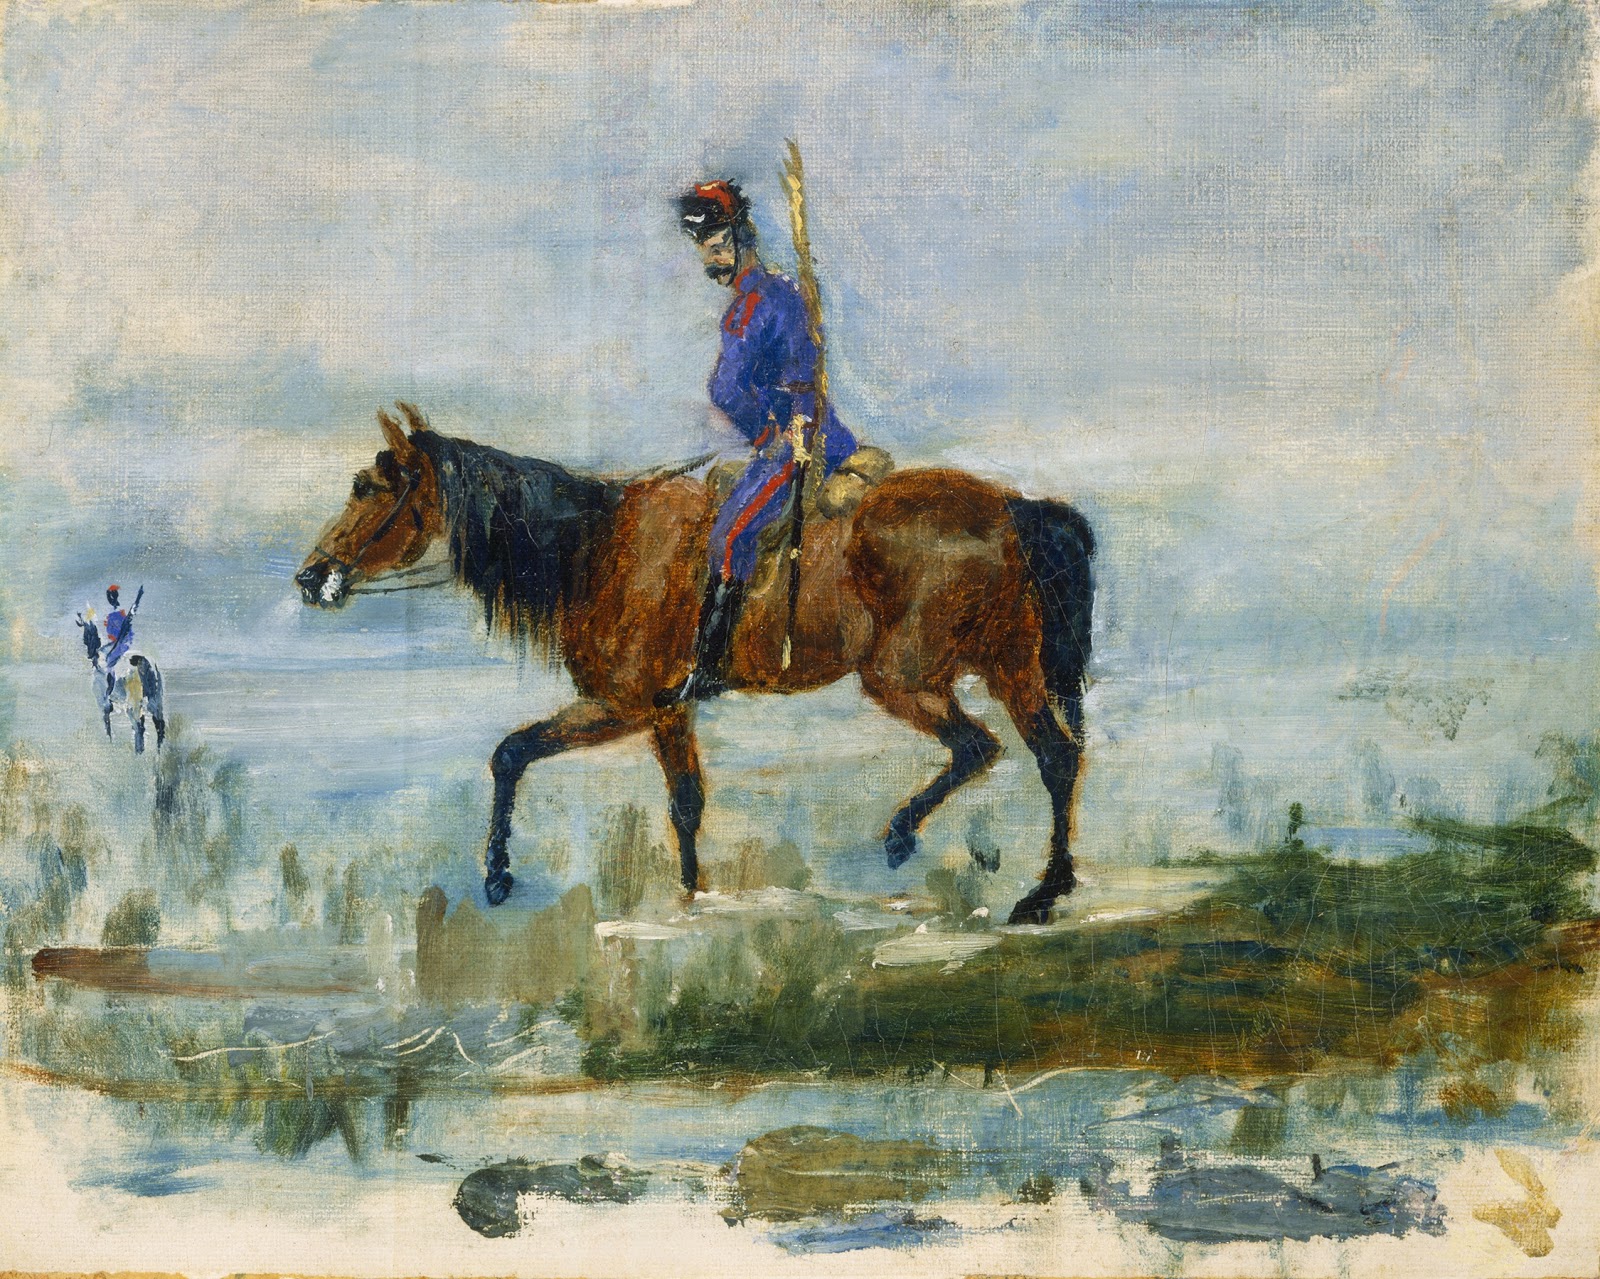 Henri+de+Toulouse+Lautrec-1864-1901 (52).jpg